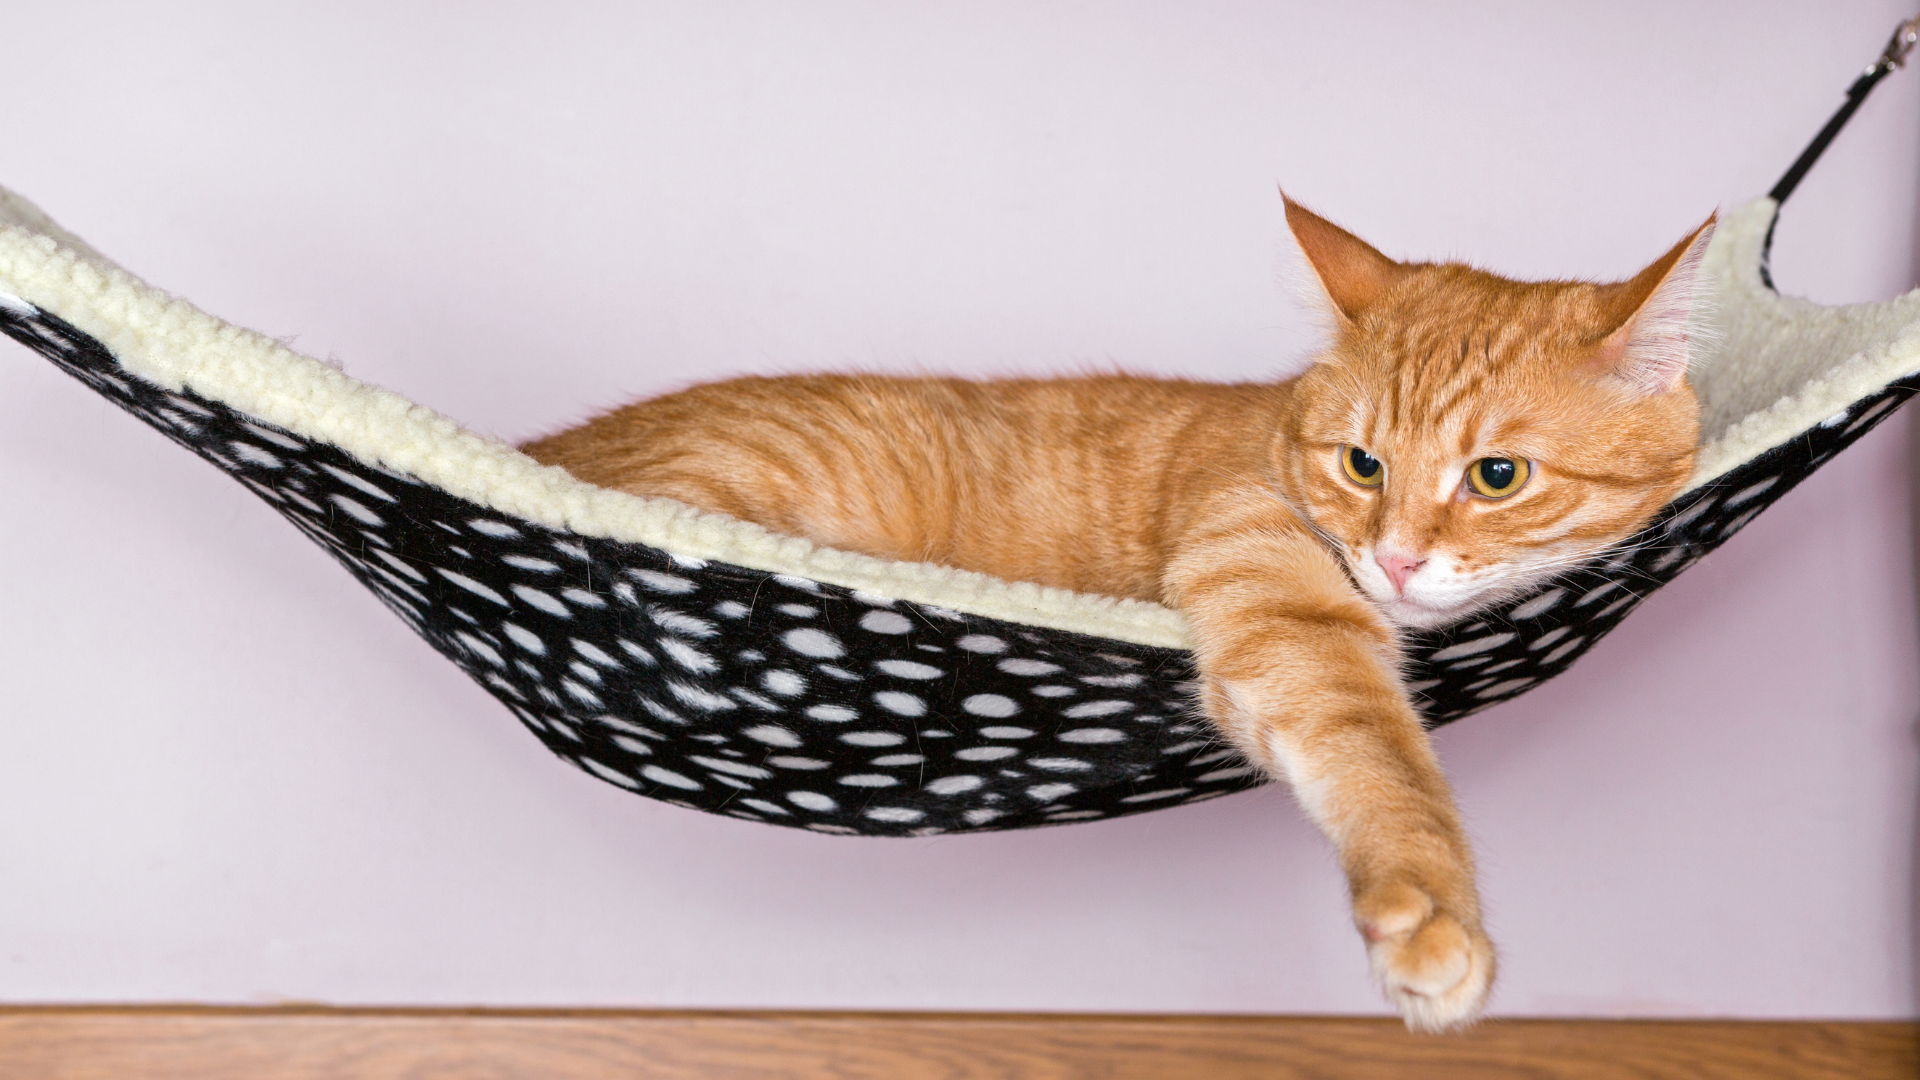 Beste kattenhangmat: De ultieme relax plek voor jouw kat